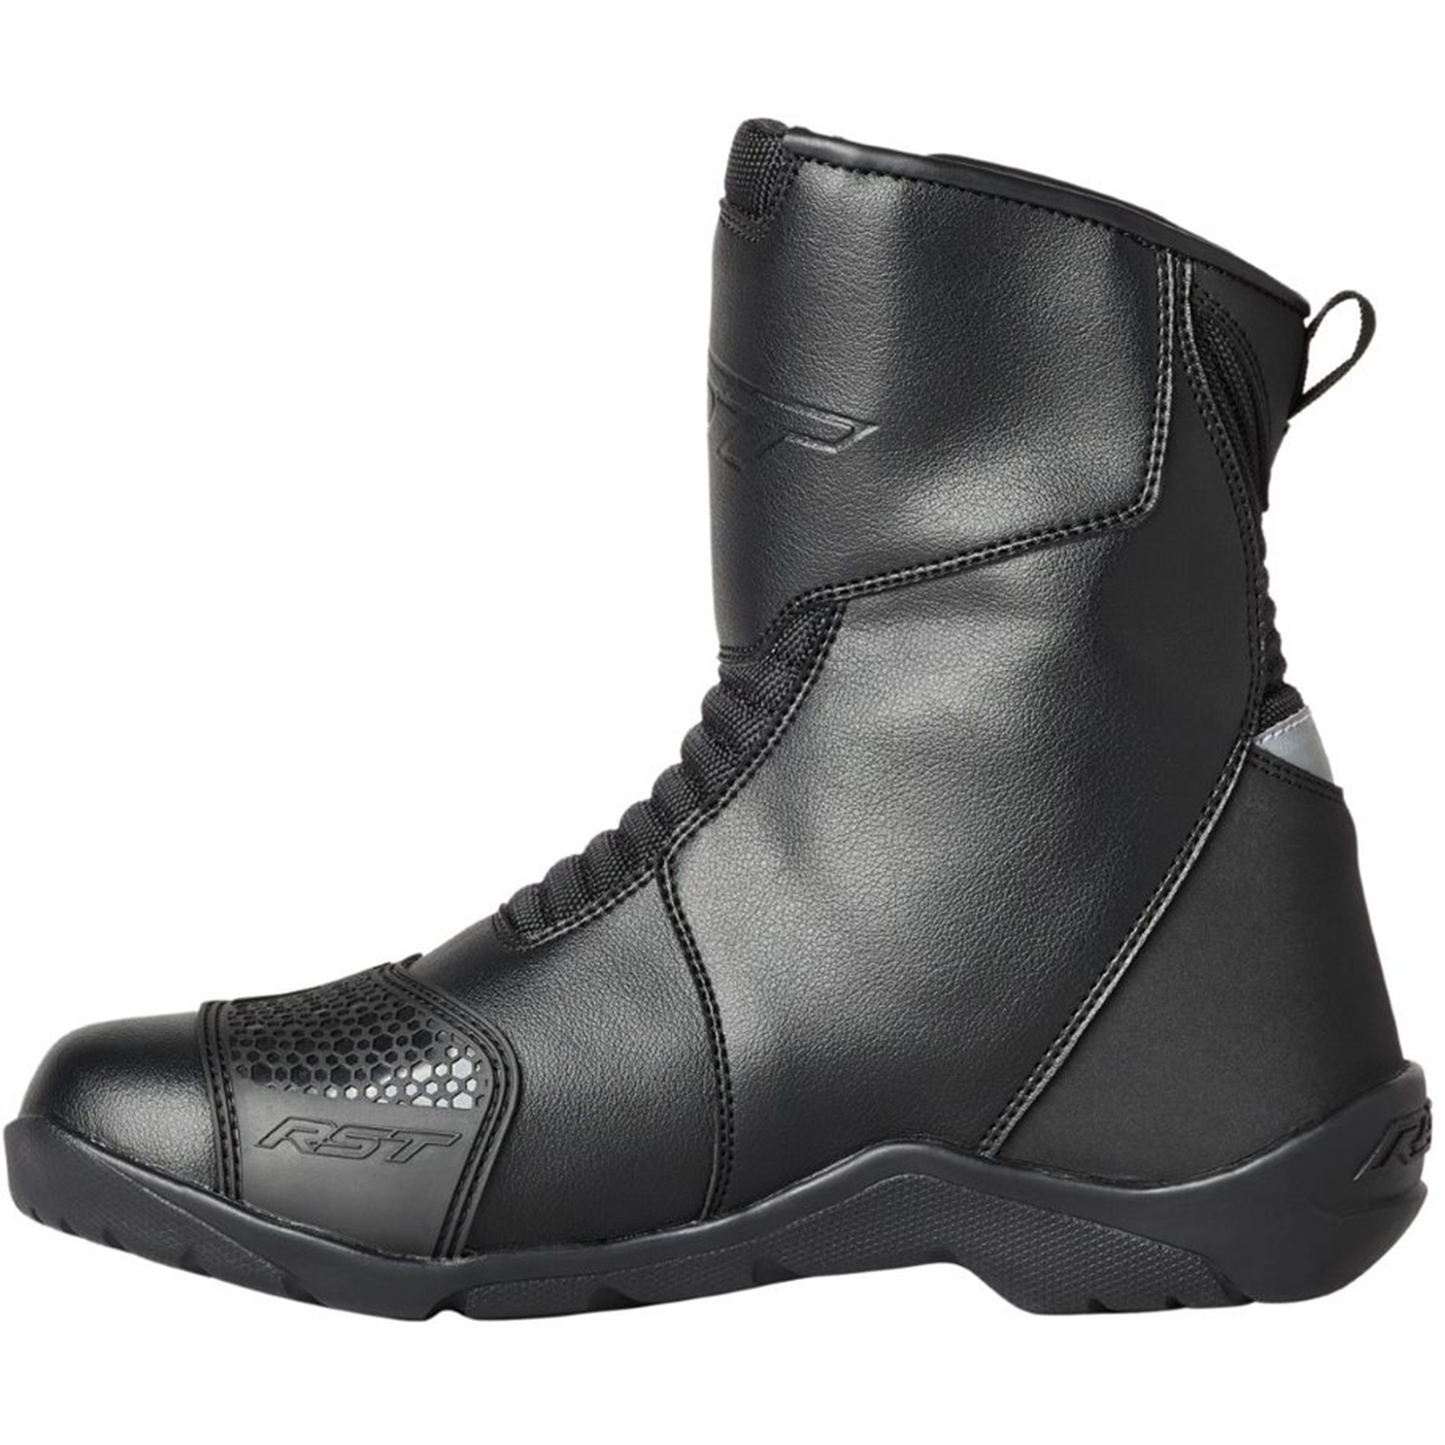 RST Axiom Mid Ladies Waterproof Boots - Black